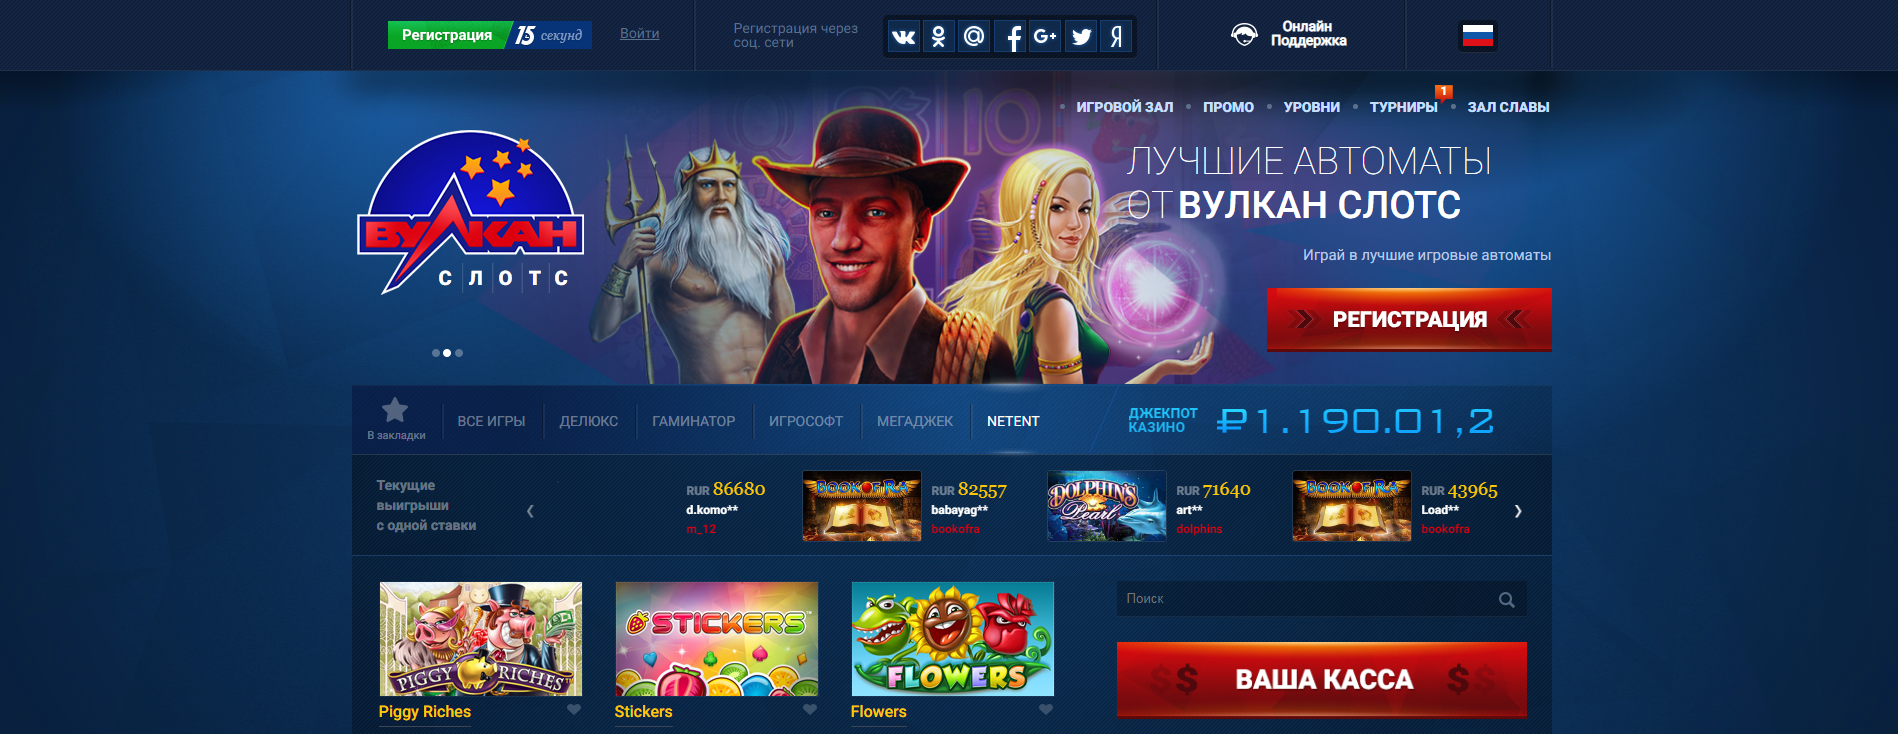 Онлайн казино Вулкан Слот: разнообразный игровой пул и выгодные бонусы